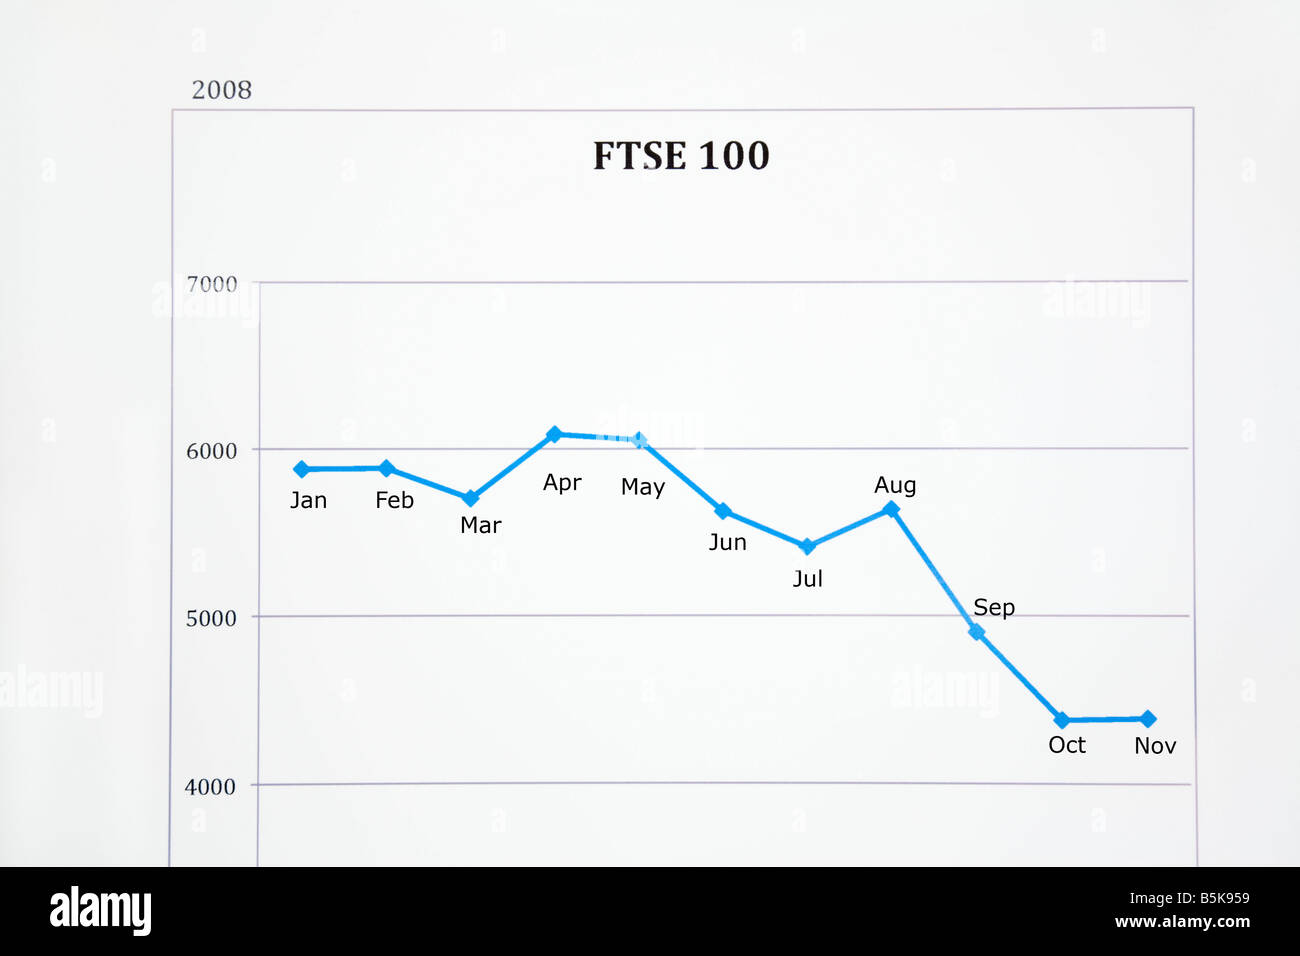 La Grande-Bretagne UK Stock Market performance graphique linéaire montre FTSE 100 le prix des actions à la baisse en 2008 Banque D'Images